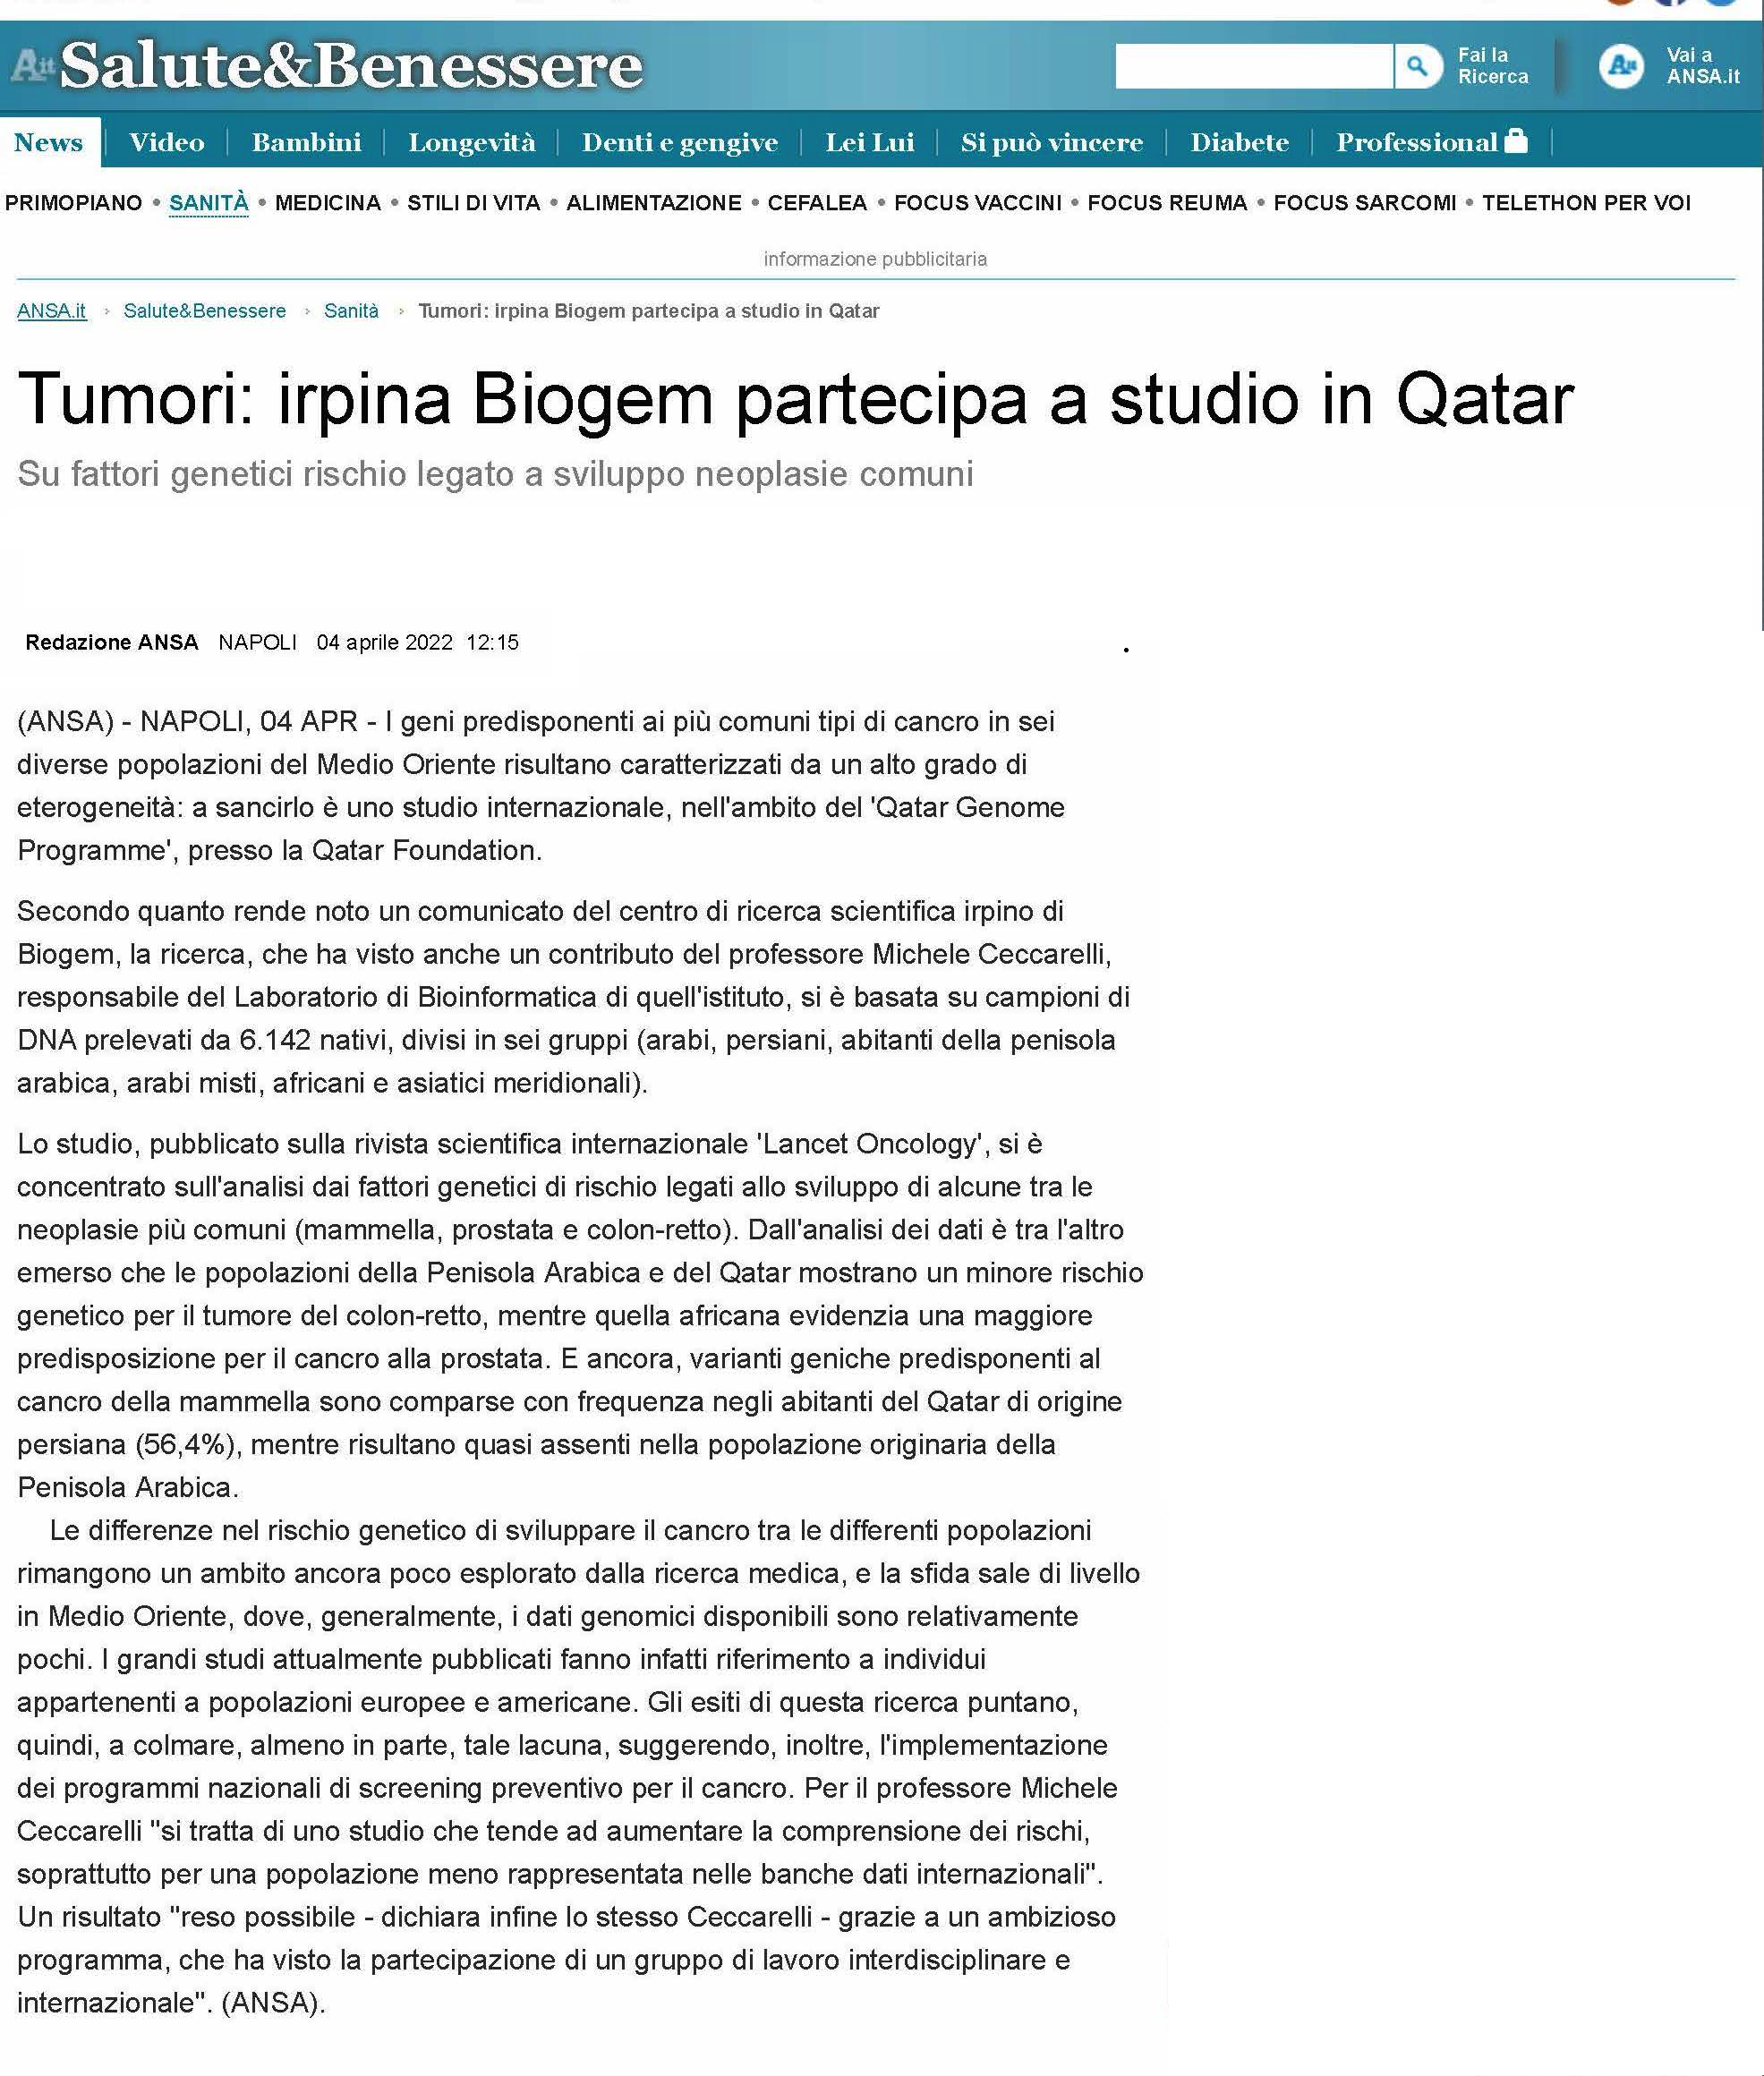 Tumori: irpina Biogem partecipa a studio in Qatar